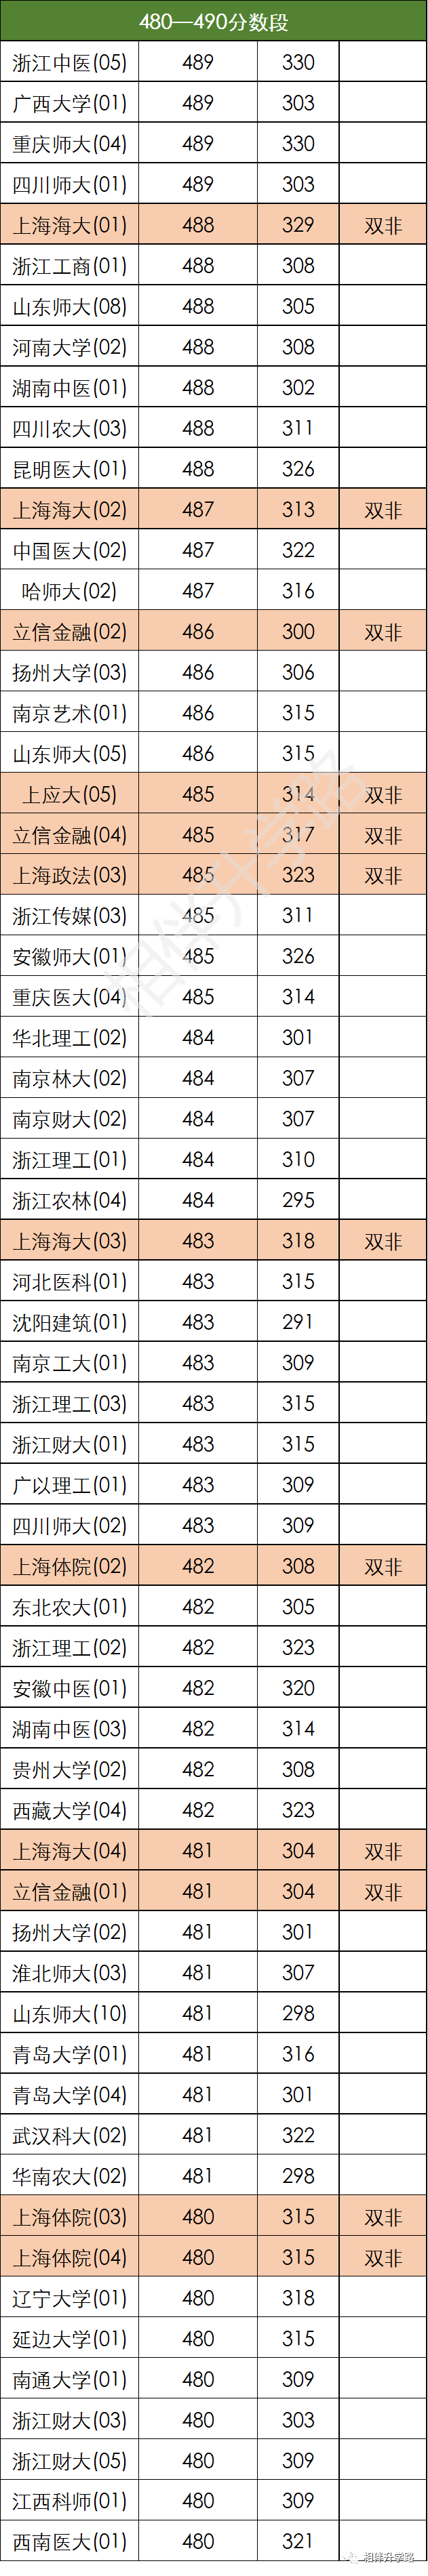 2020年高考排名表河_2020年上海高考录取分数线排行!